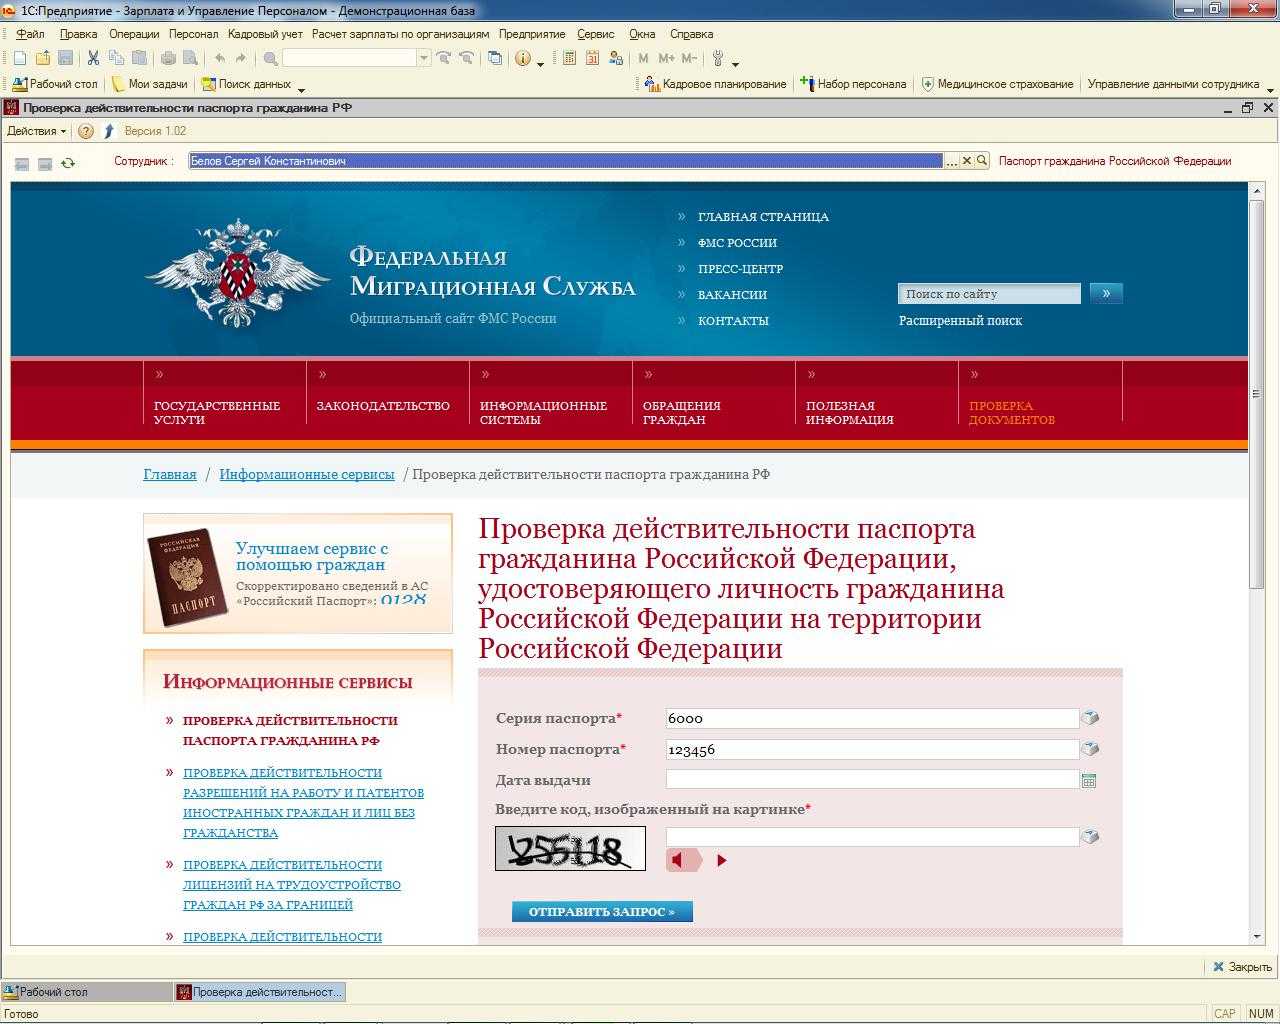 Deport fms. База ФМС. База данных УФМС России.